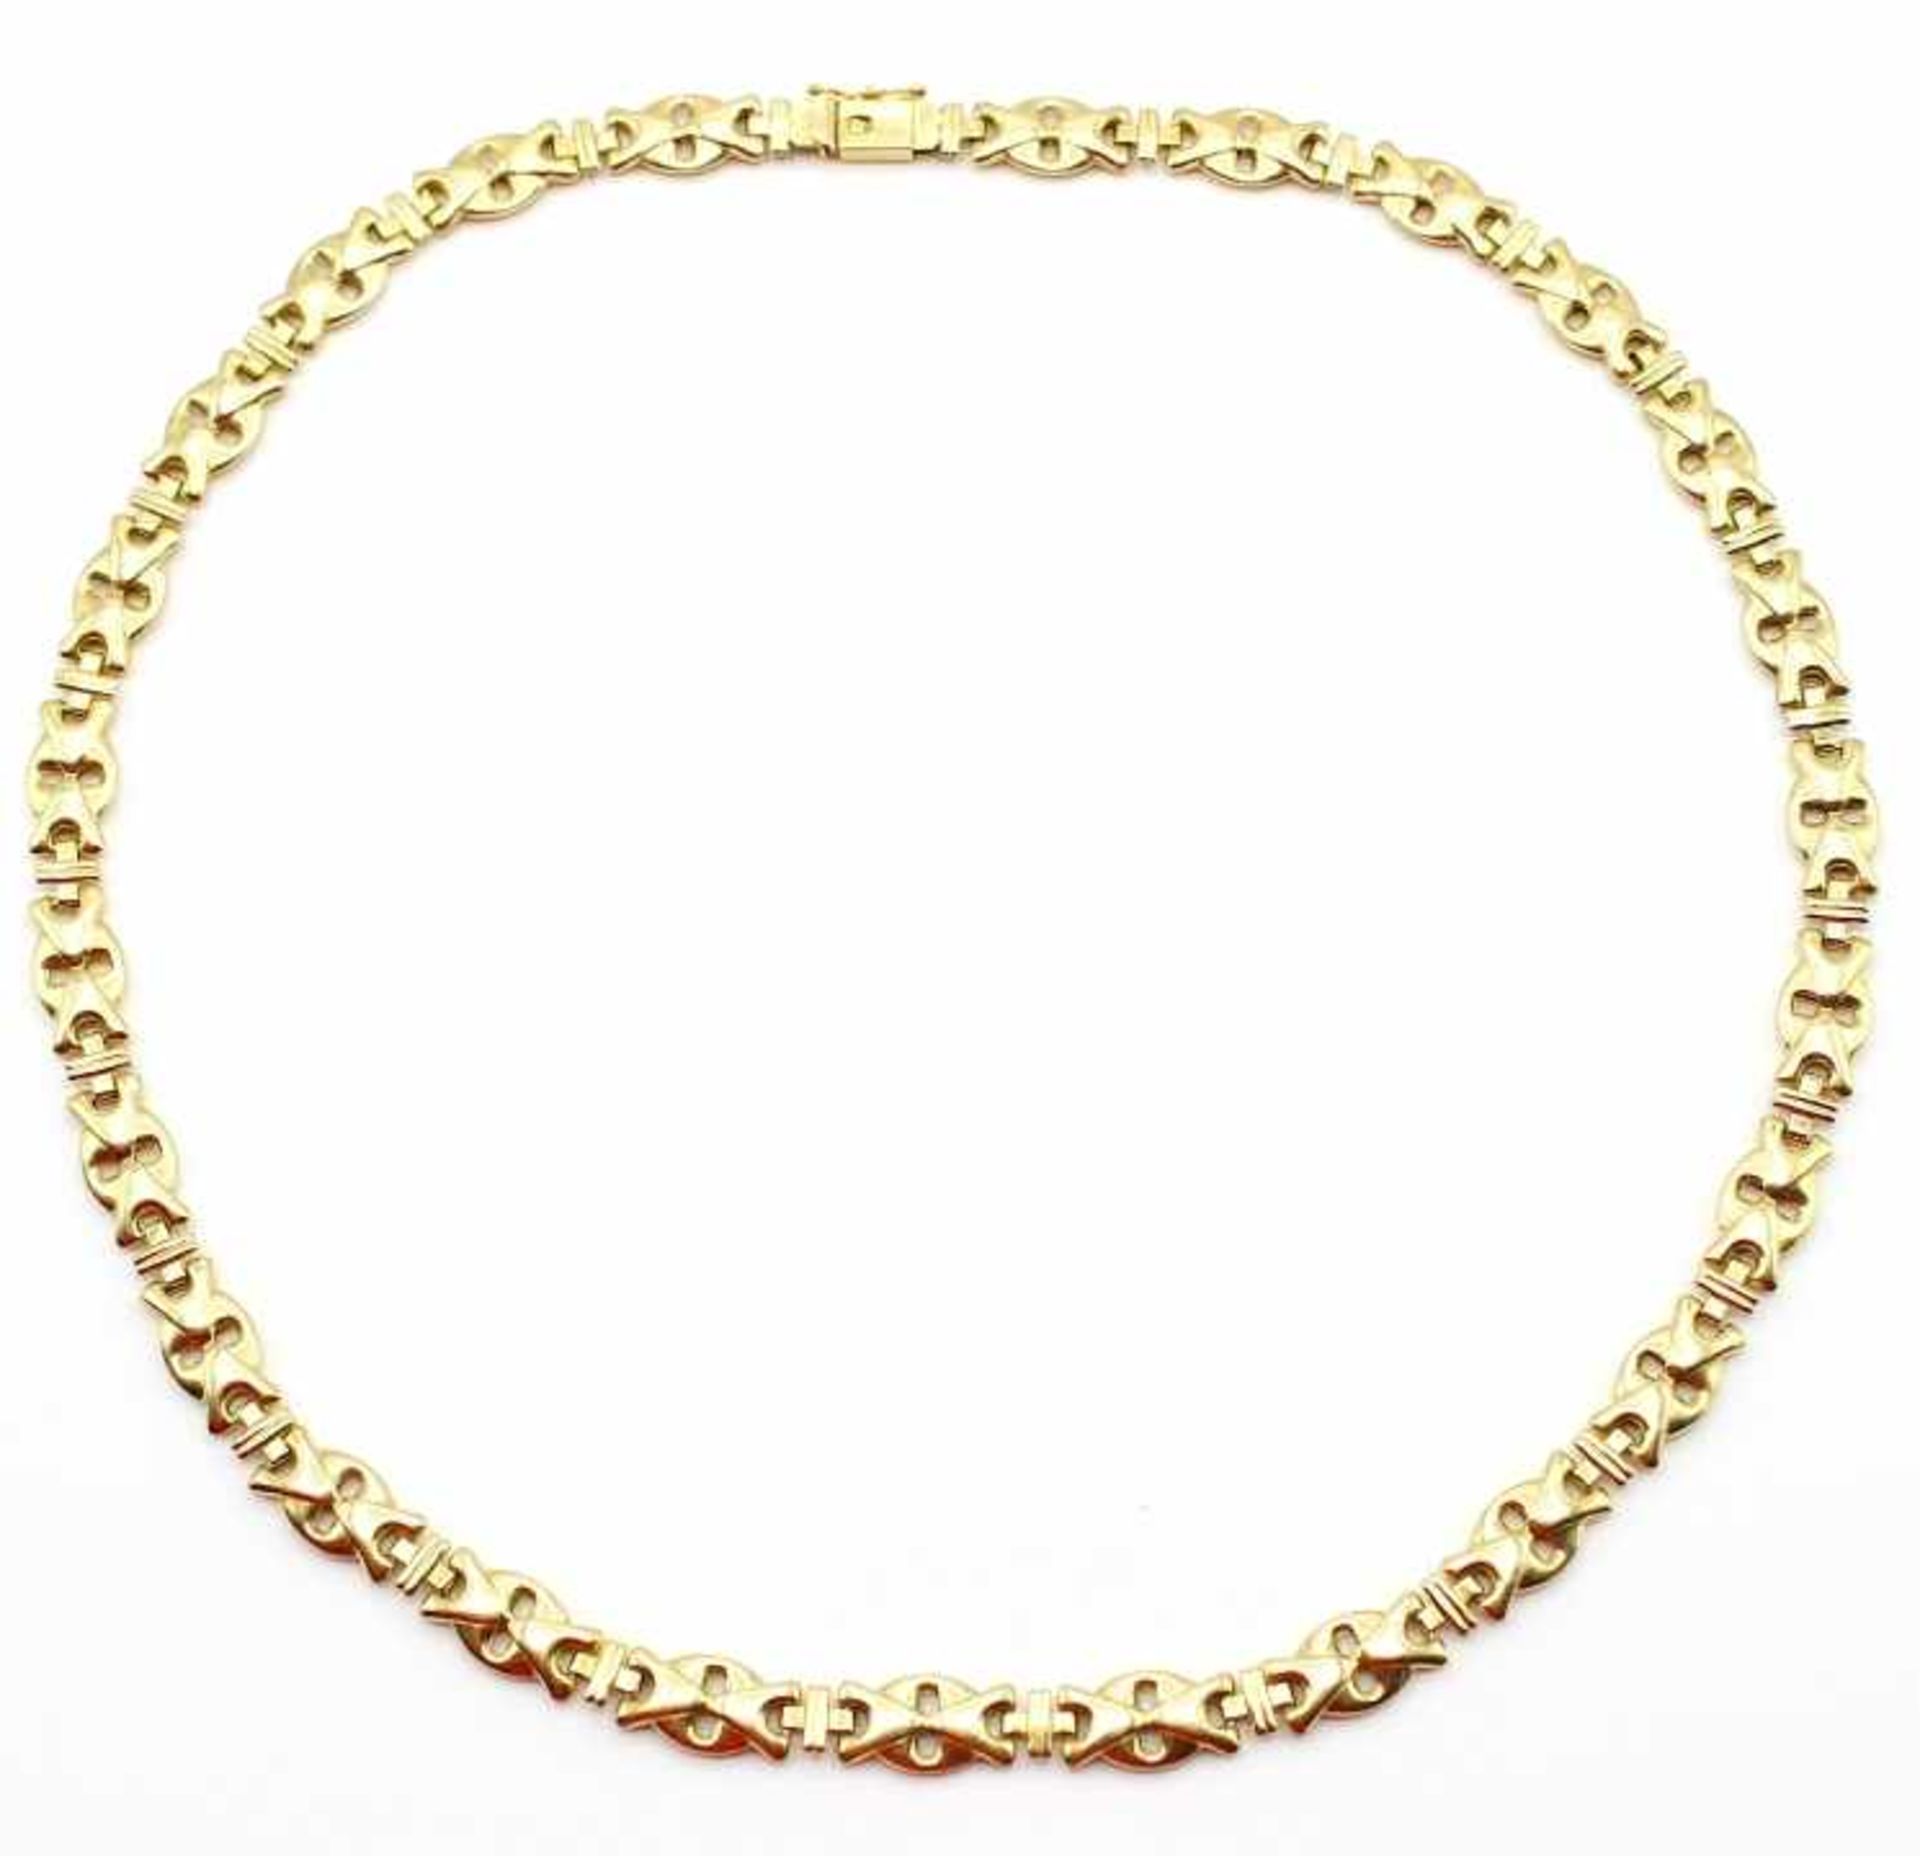 Goldene Halskette - Gold gest. 585 bewegliche Glieder, Steckverschluß mit Sicherheitsachter, Länge